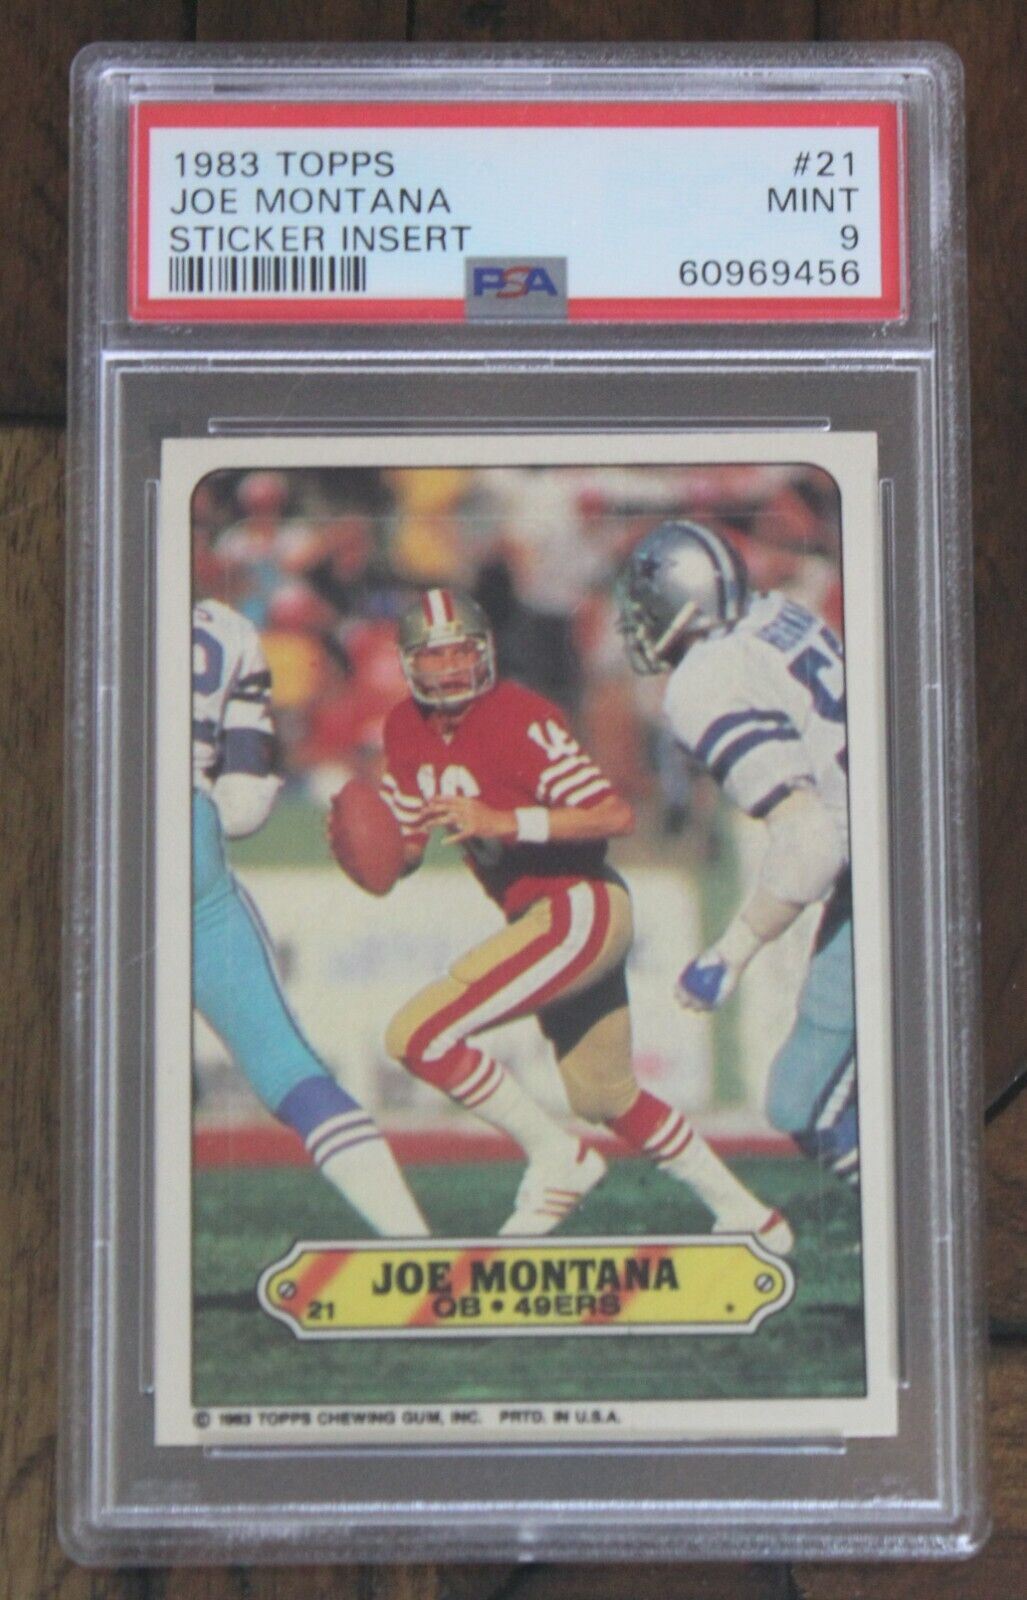 1983 Topps Joe Montana Sticker Insert #21 PSA MINT 9 Football Card